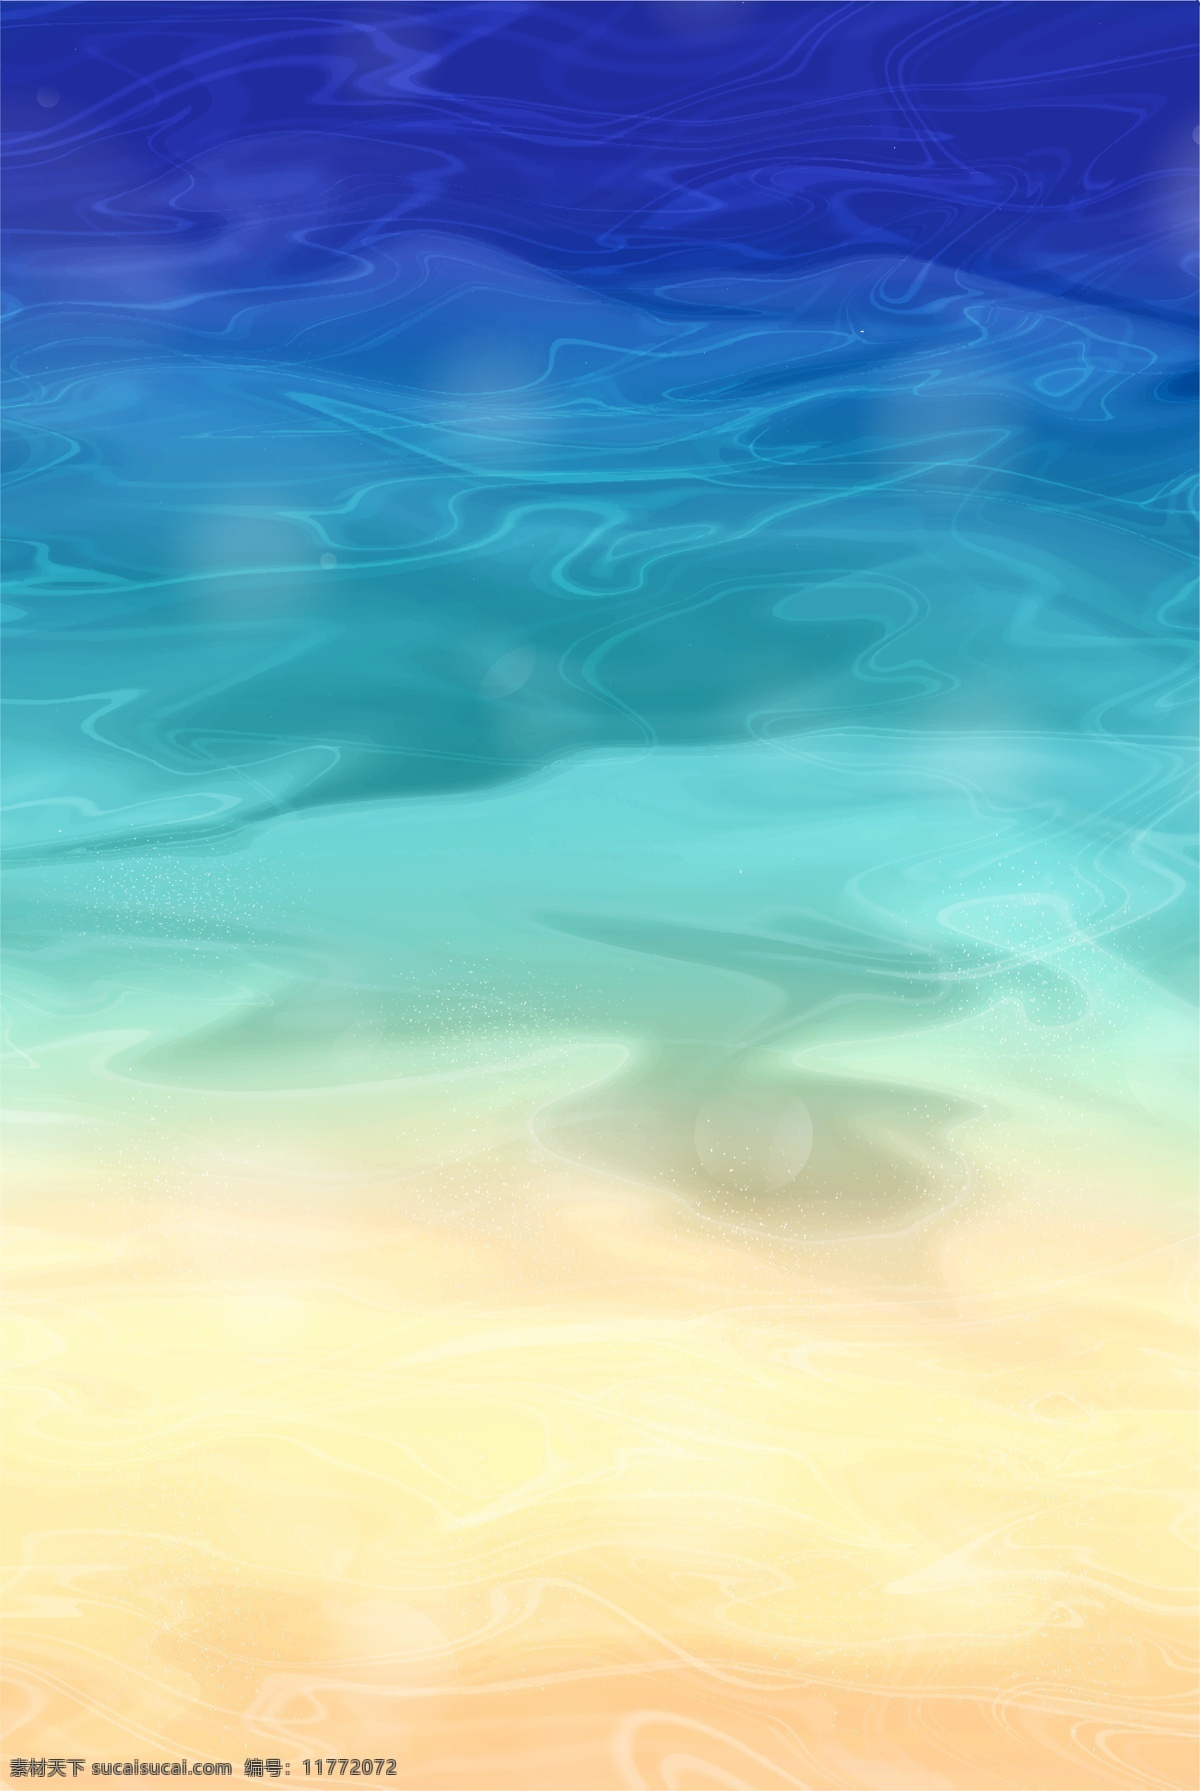 蔚蓝大海 手机壁纸 蔚蓝 大海 碧蓝 电脑壁纸 屏保 唯美大海 创意 自然景观 沙滩 海滩 底纹边框 背景底纹